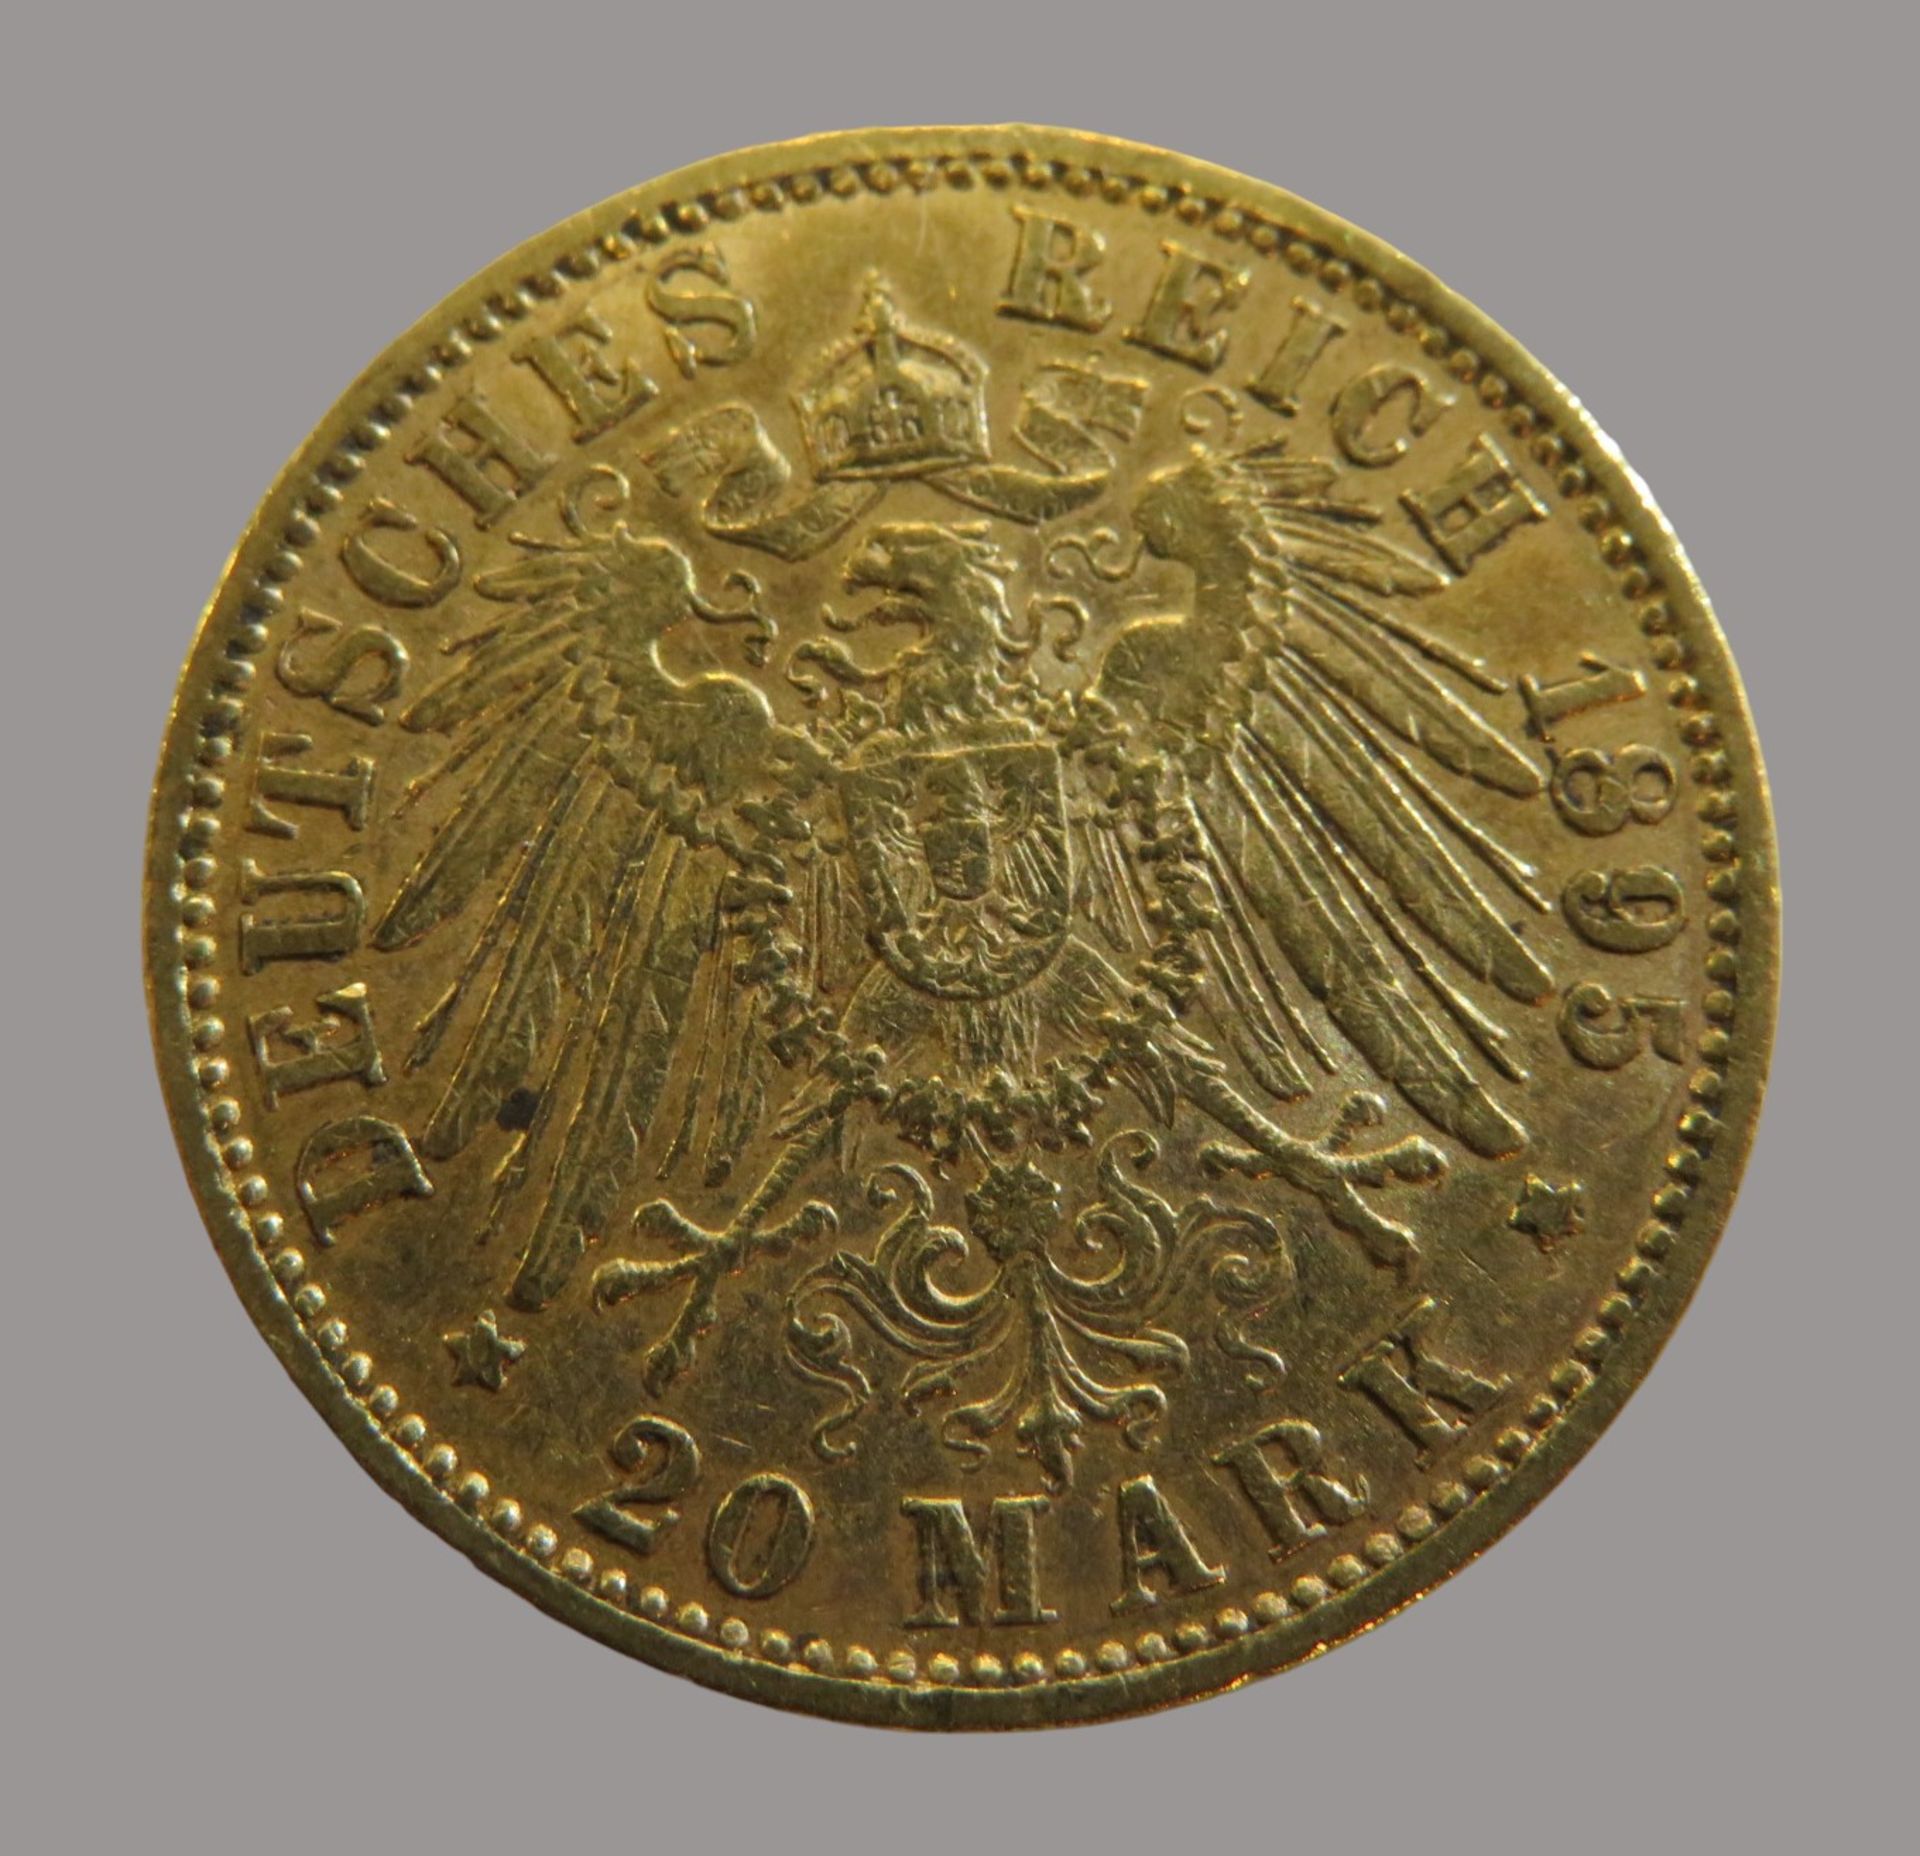 Goldmünze, 20 Mark, Otto König von Bayern, 1895D, Gold 900/000, 7,96 g, J 200, Erhaltungszustand SS - Image 2 of 2